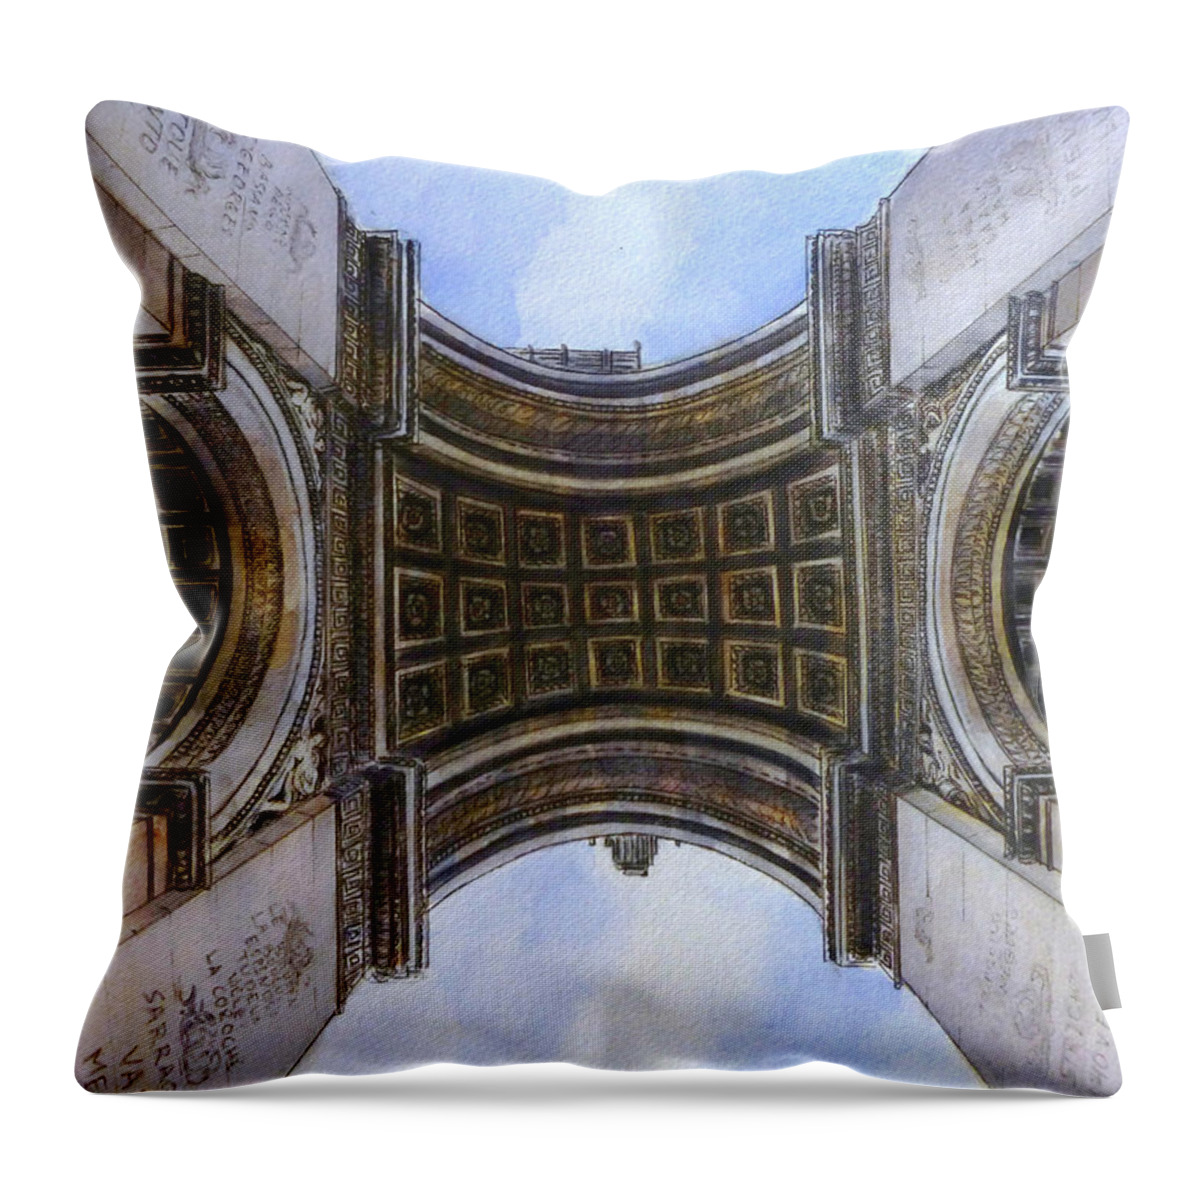 Arc De Triomphe Throw Pillow featuring the painting Arc de Triomphe by Henrieta Maneva